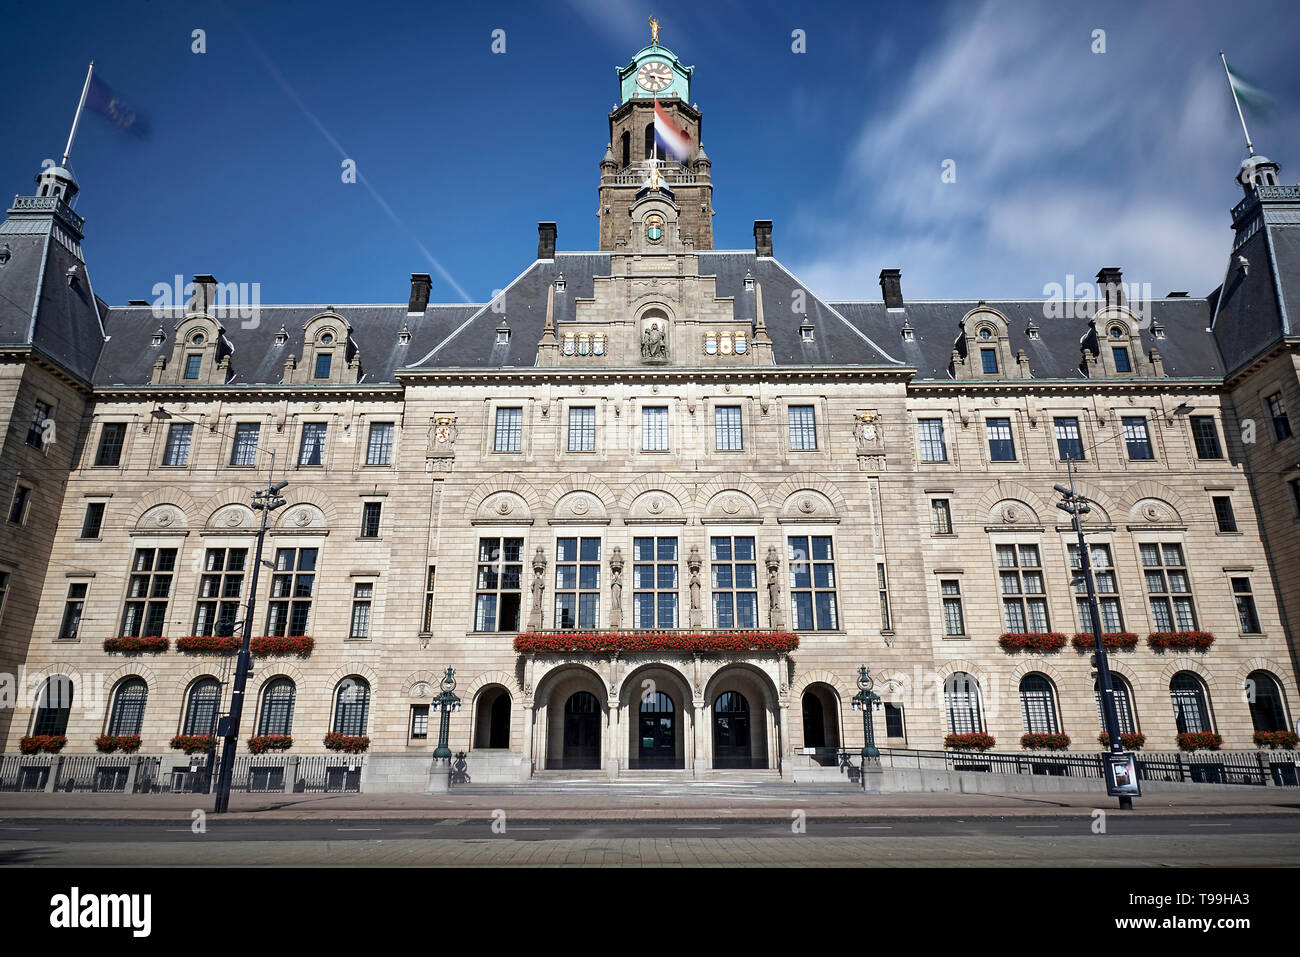 Hôtel de ville de la ville de Rotterdam dans le soleil d'été Banque D'Images